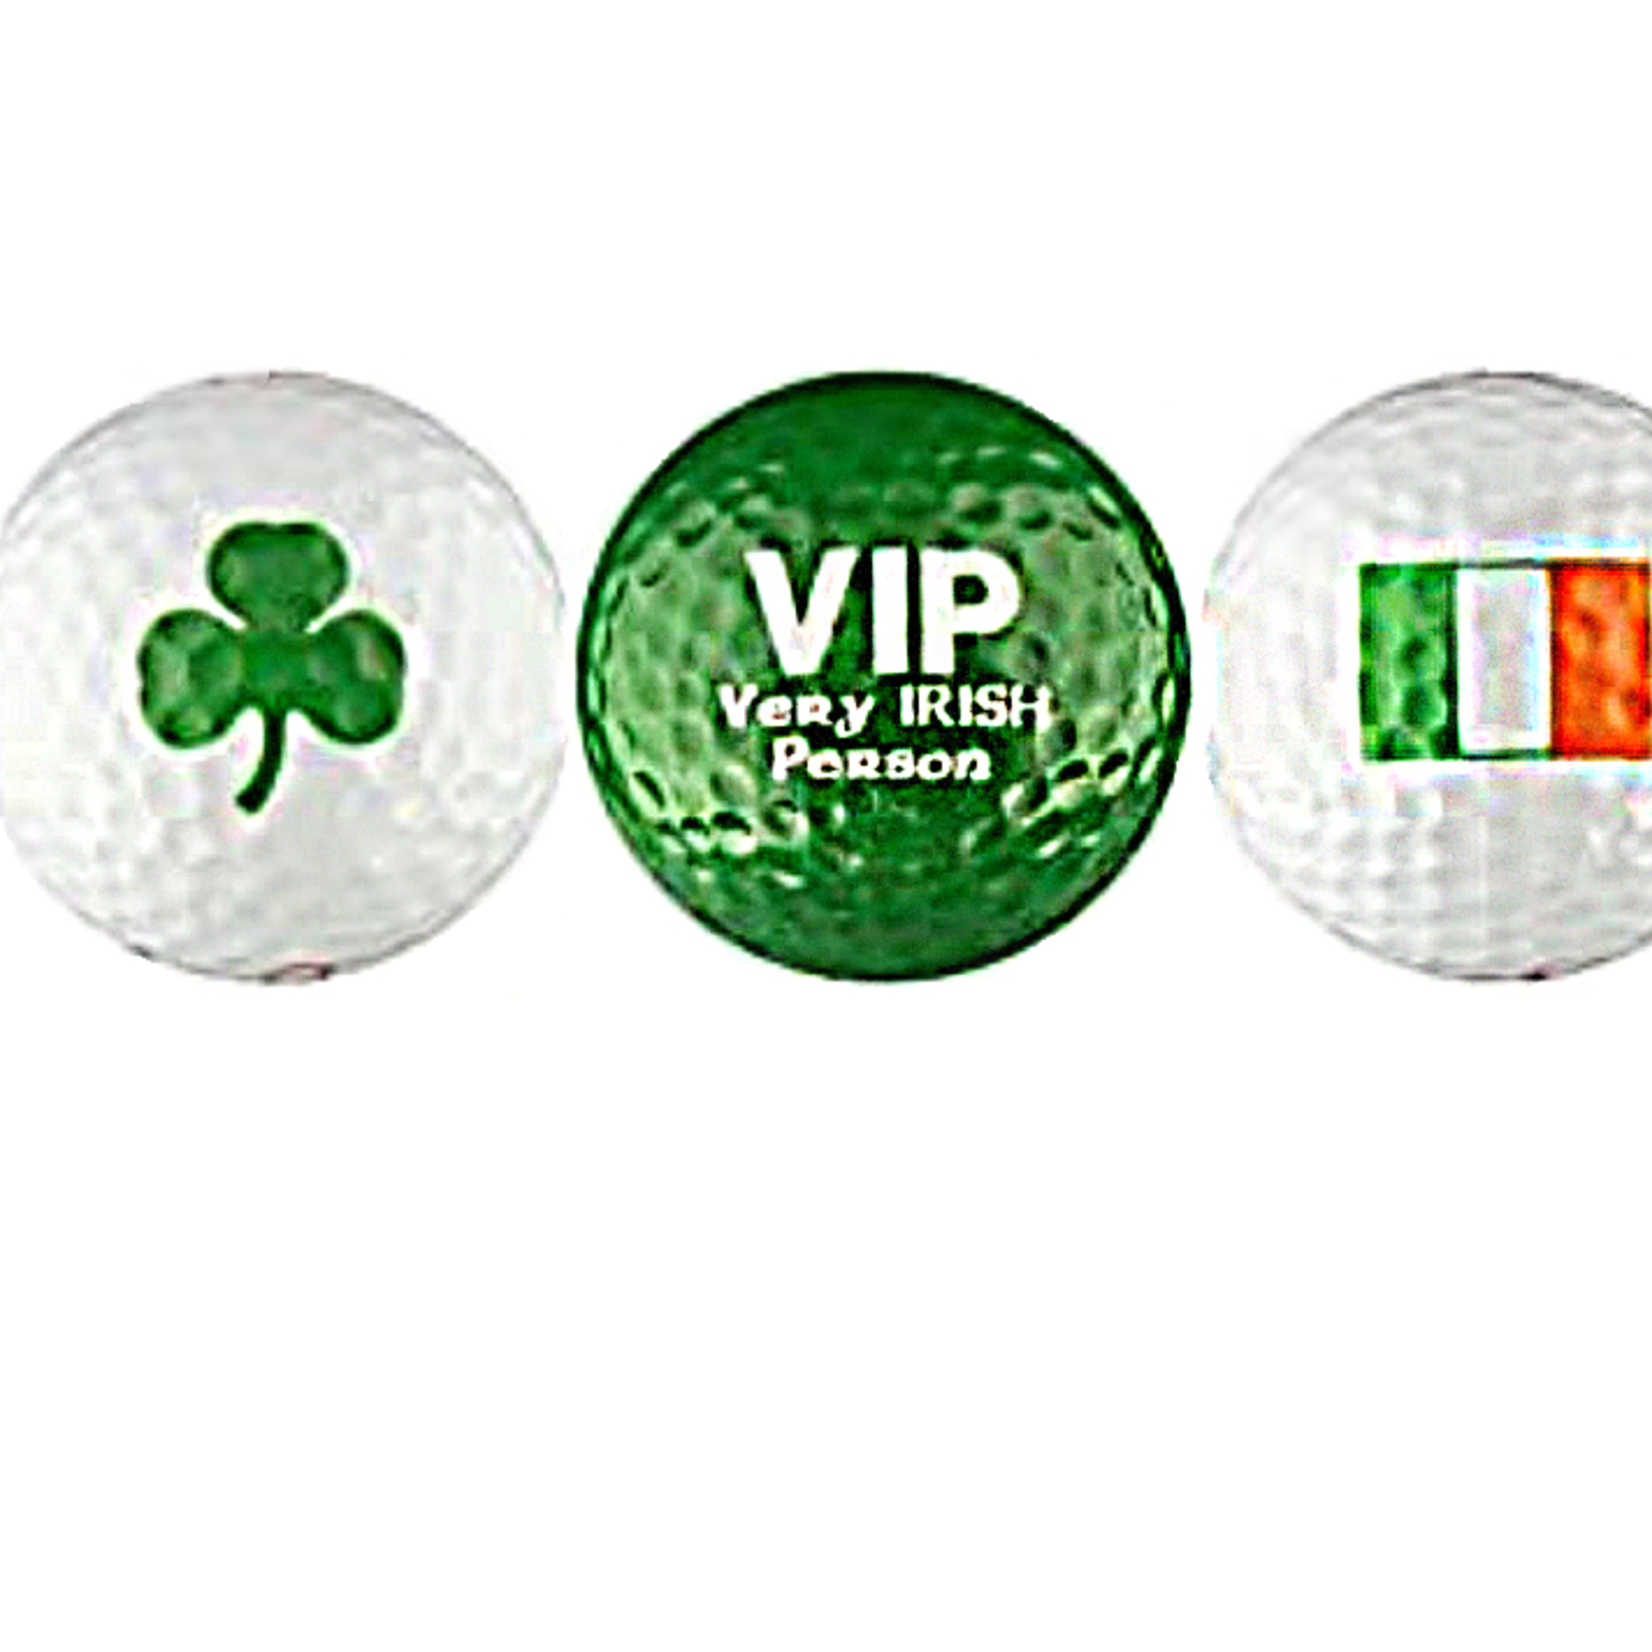 Burke and Hogan "VIP" Irish Golf Balls (3 Pack)